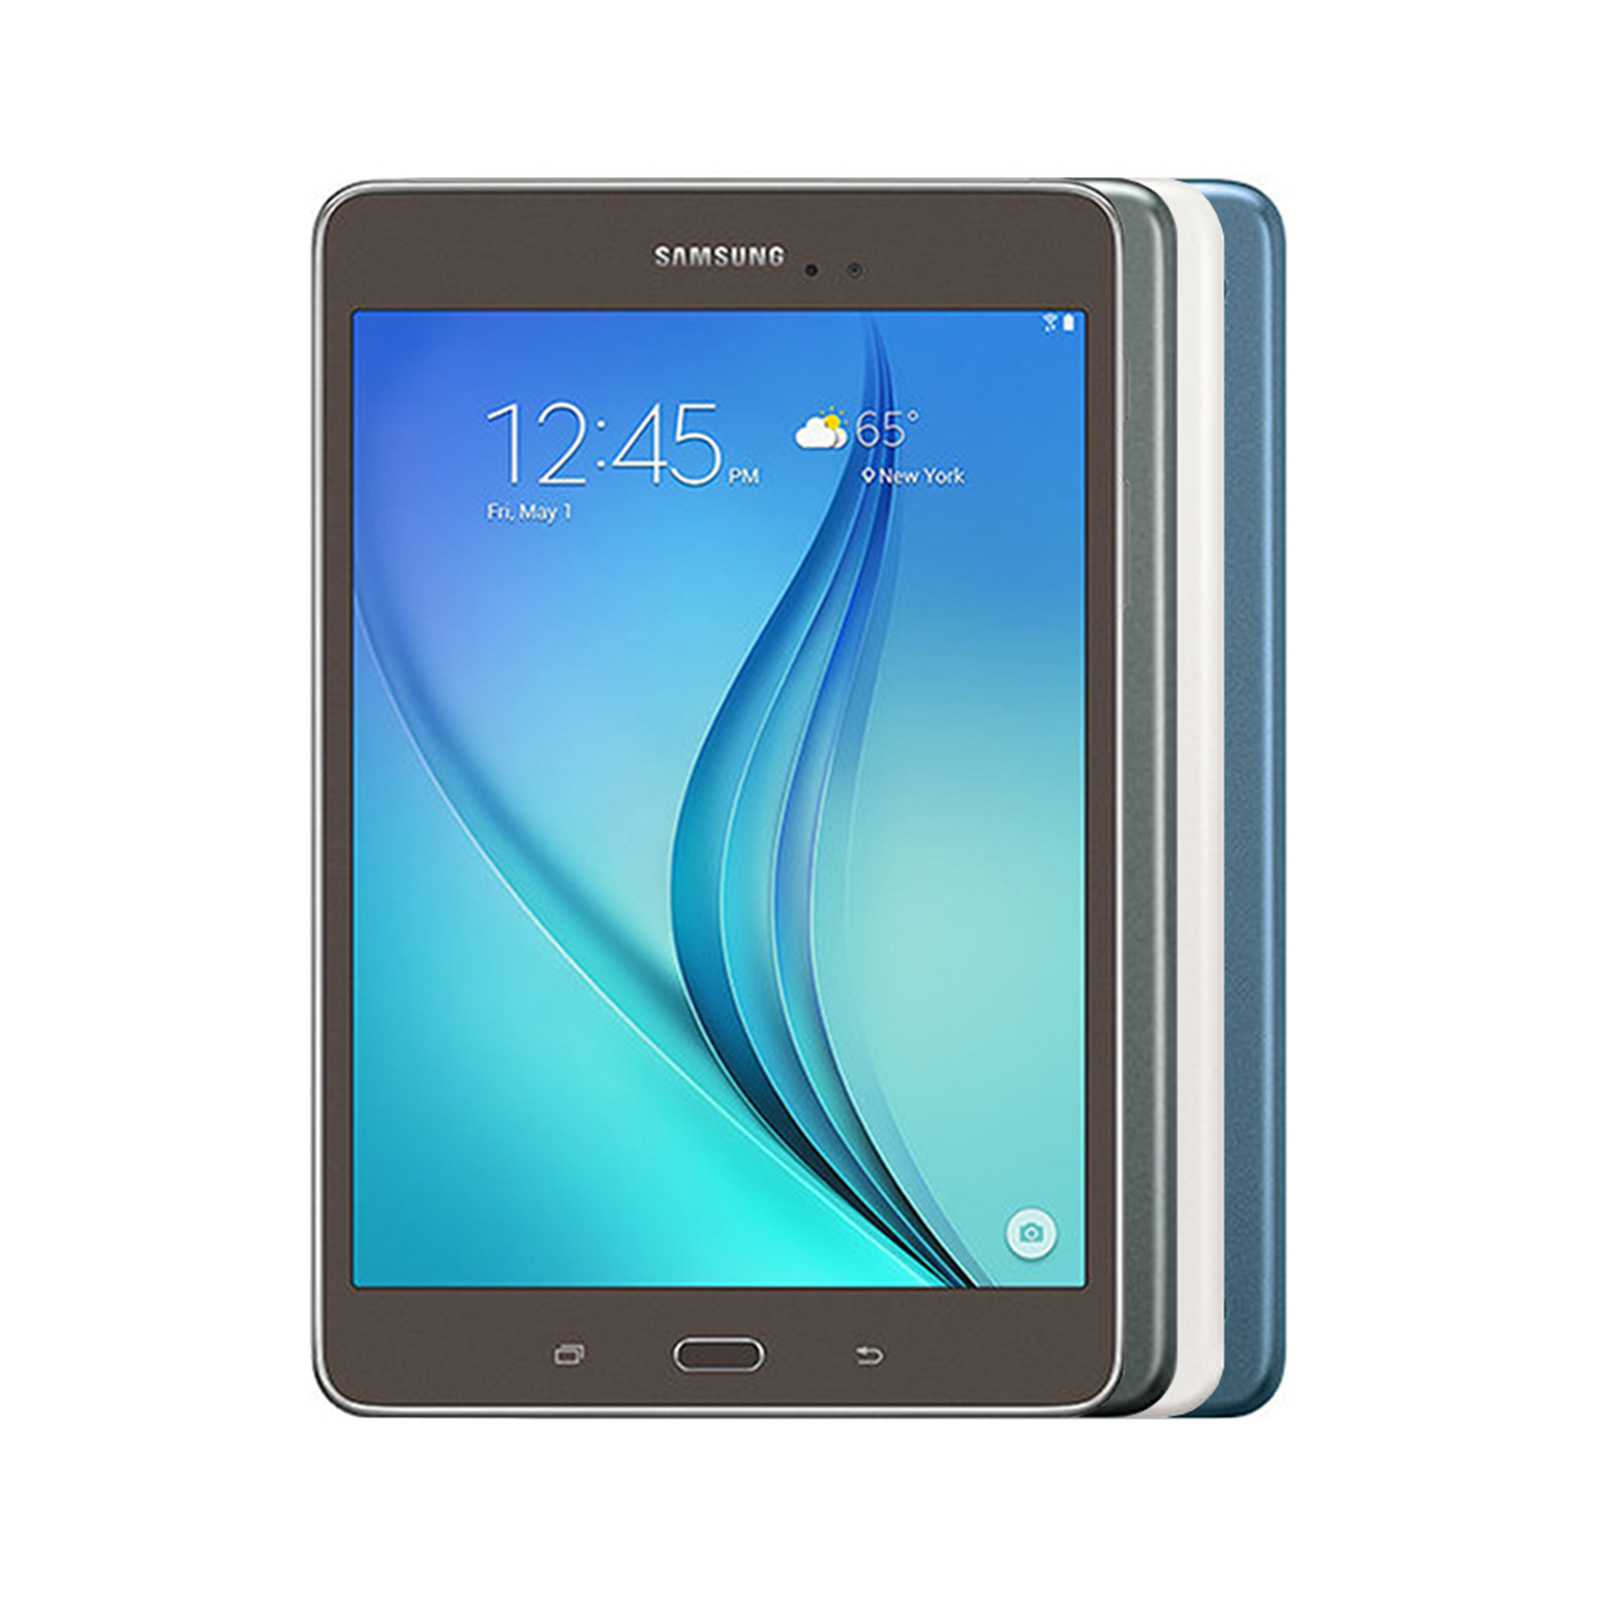 Samsung Galaxy Tab A 8.0 2015 - As New